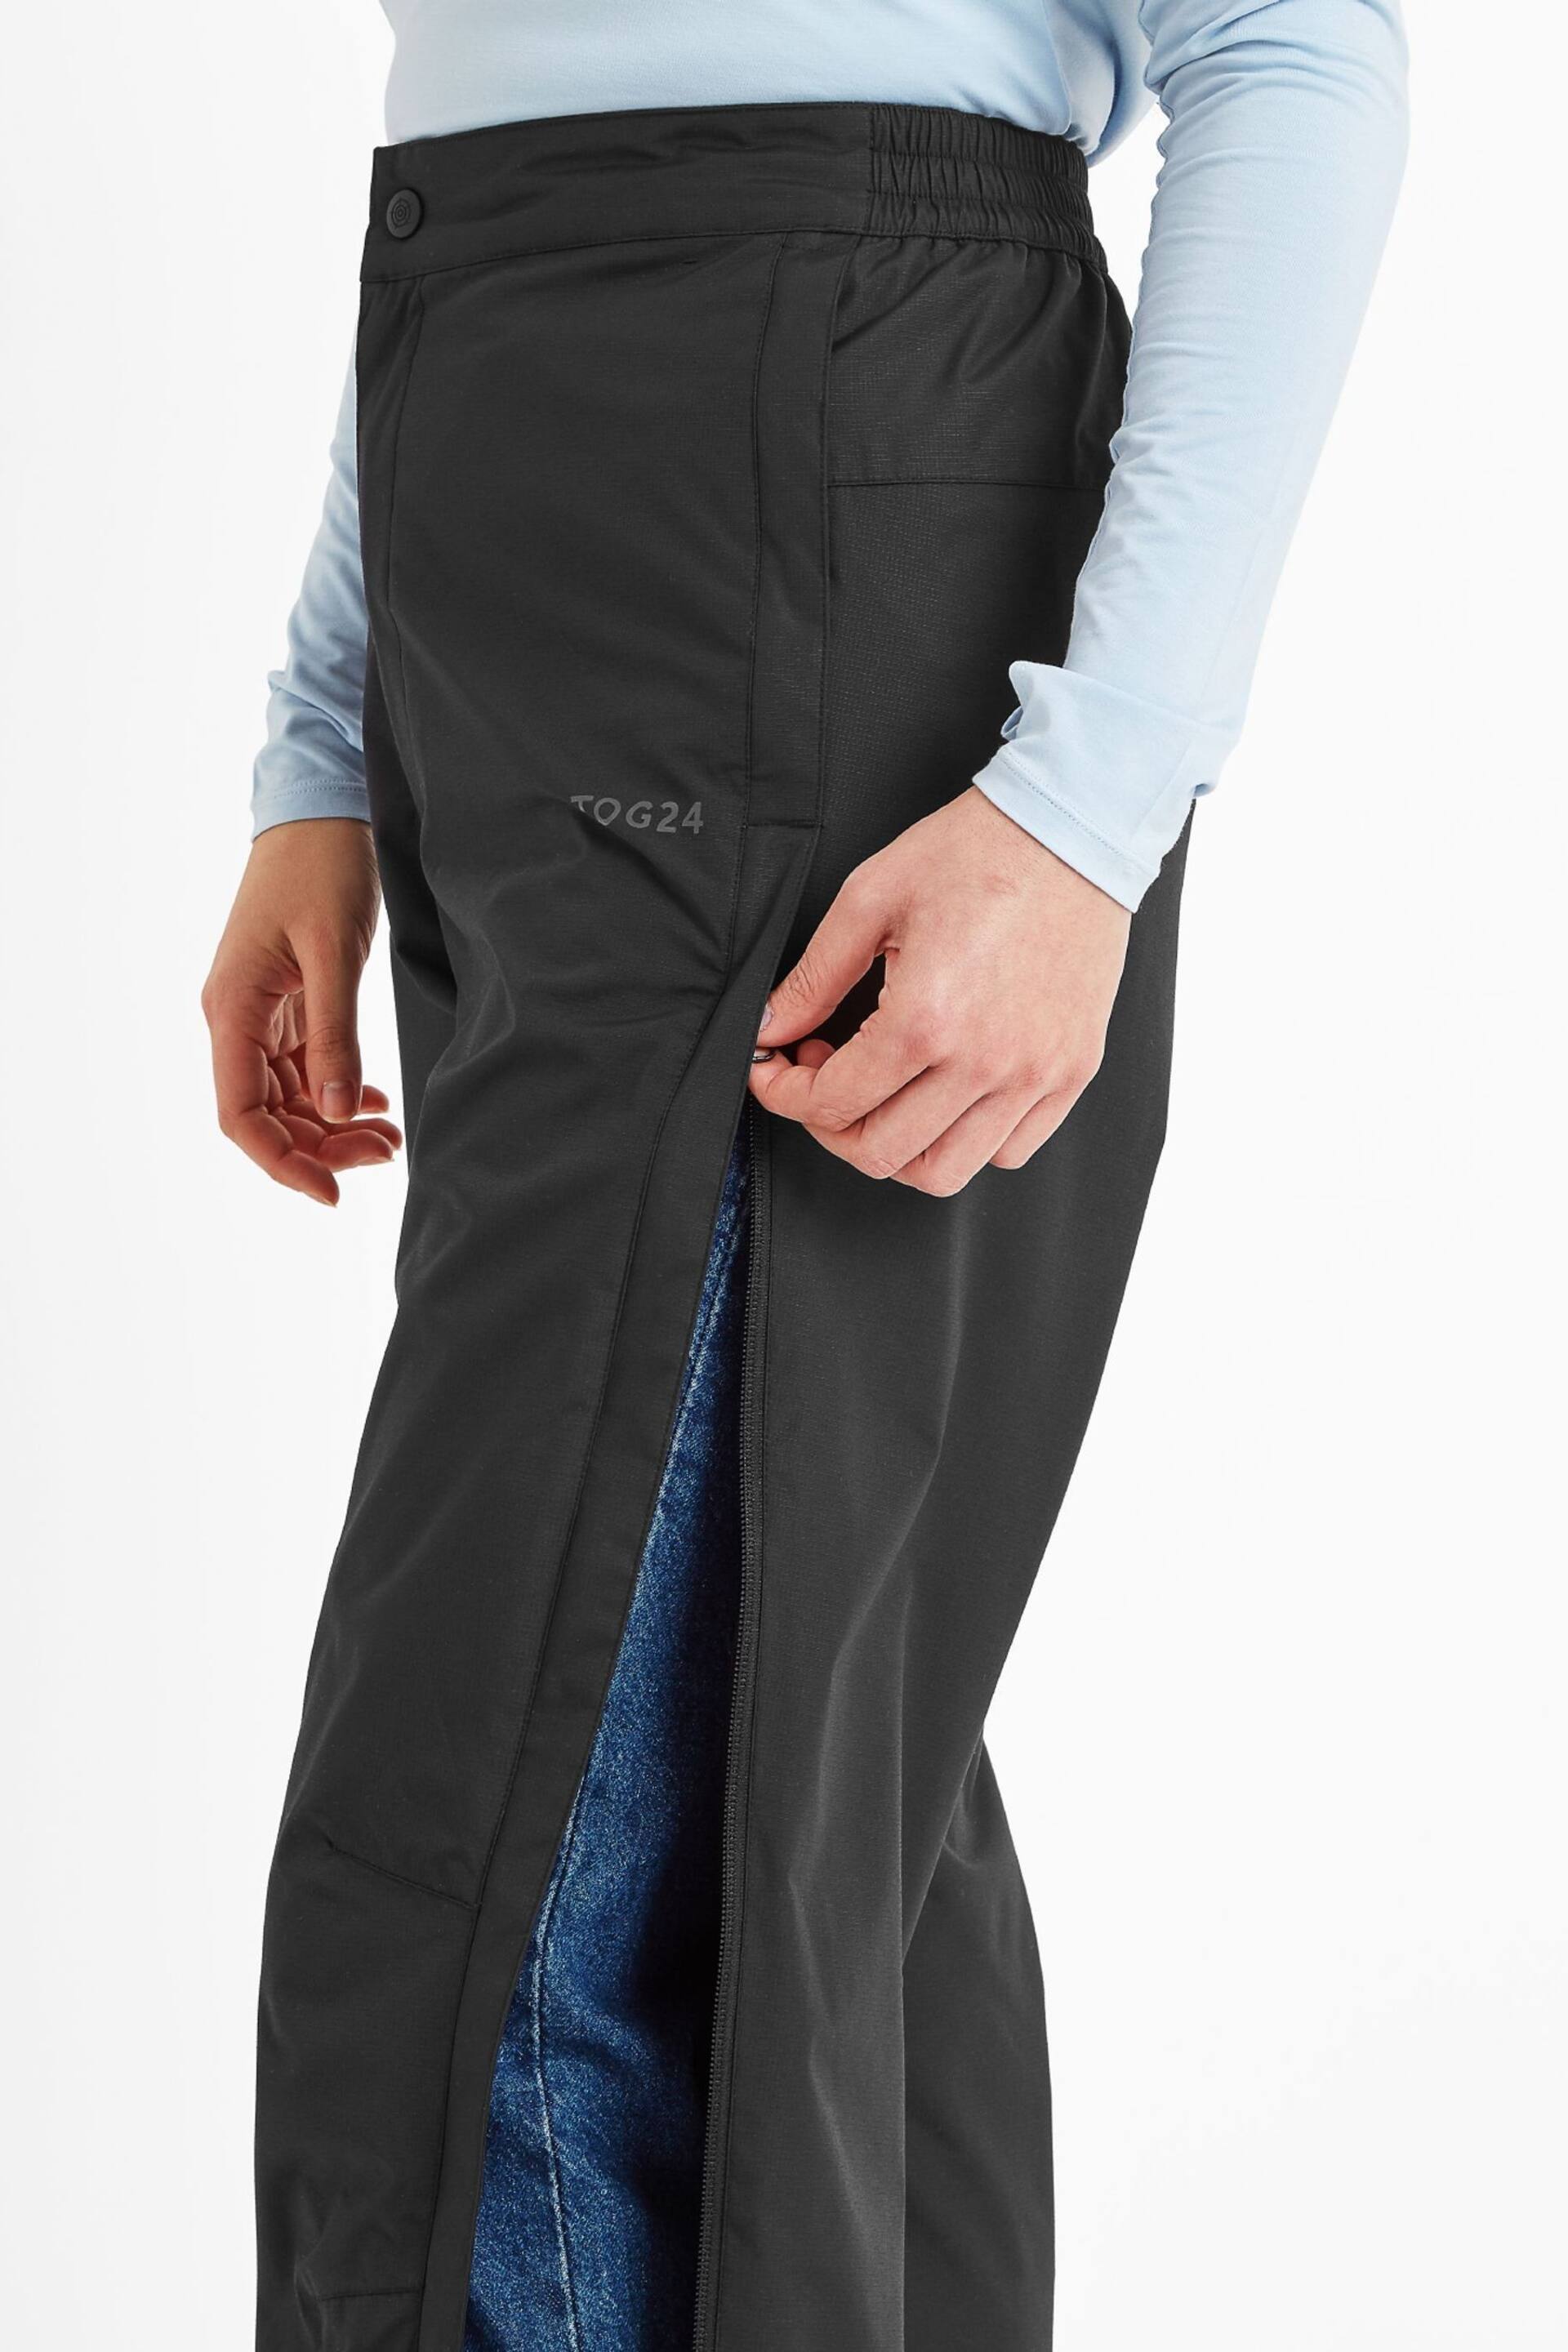 Tog 24 Black Wigton Waterproof Short Trousers - Image 4 of 5